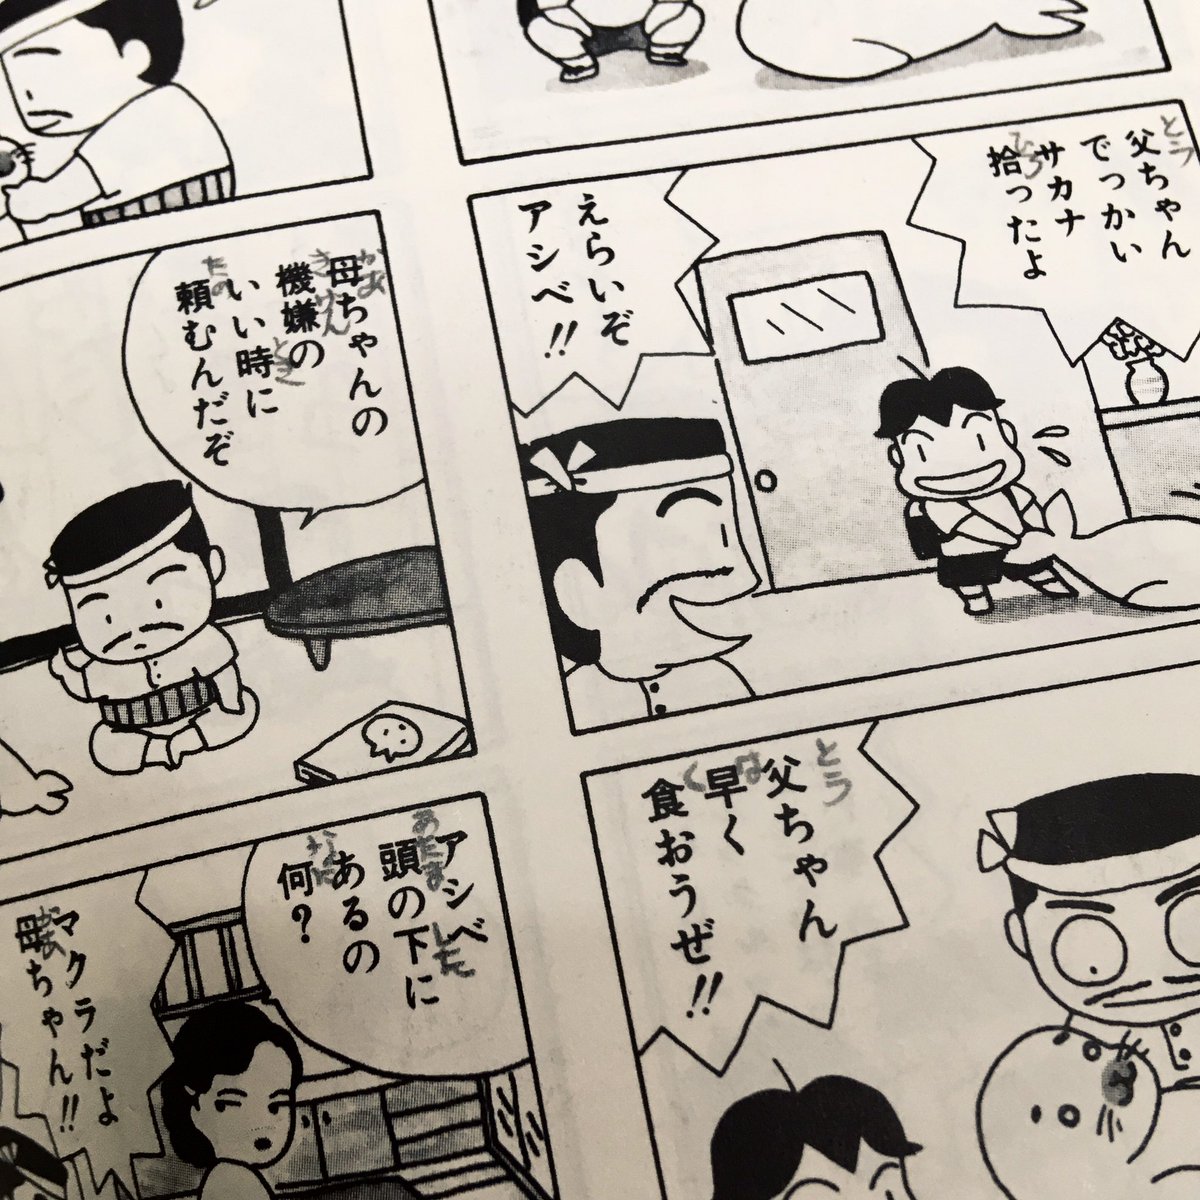 「少年アシベ」を古本で買ったらご丁寧に手書きのルビが。まだ漢字の読めない子供のために書いてあげたんだろな、とてもよい。 